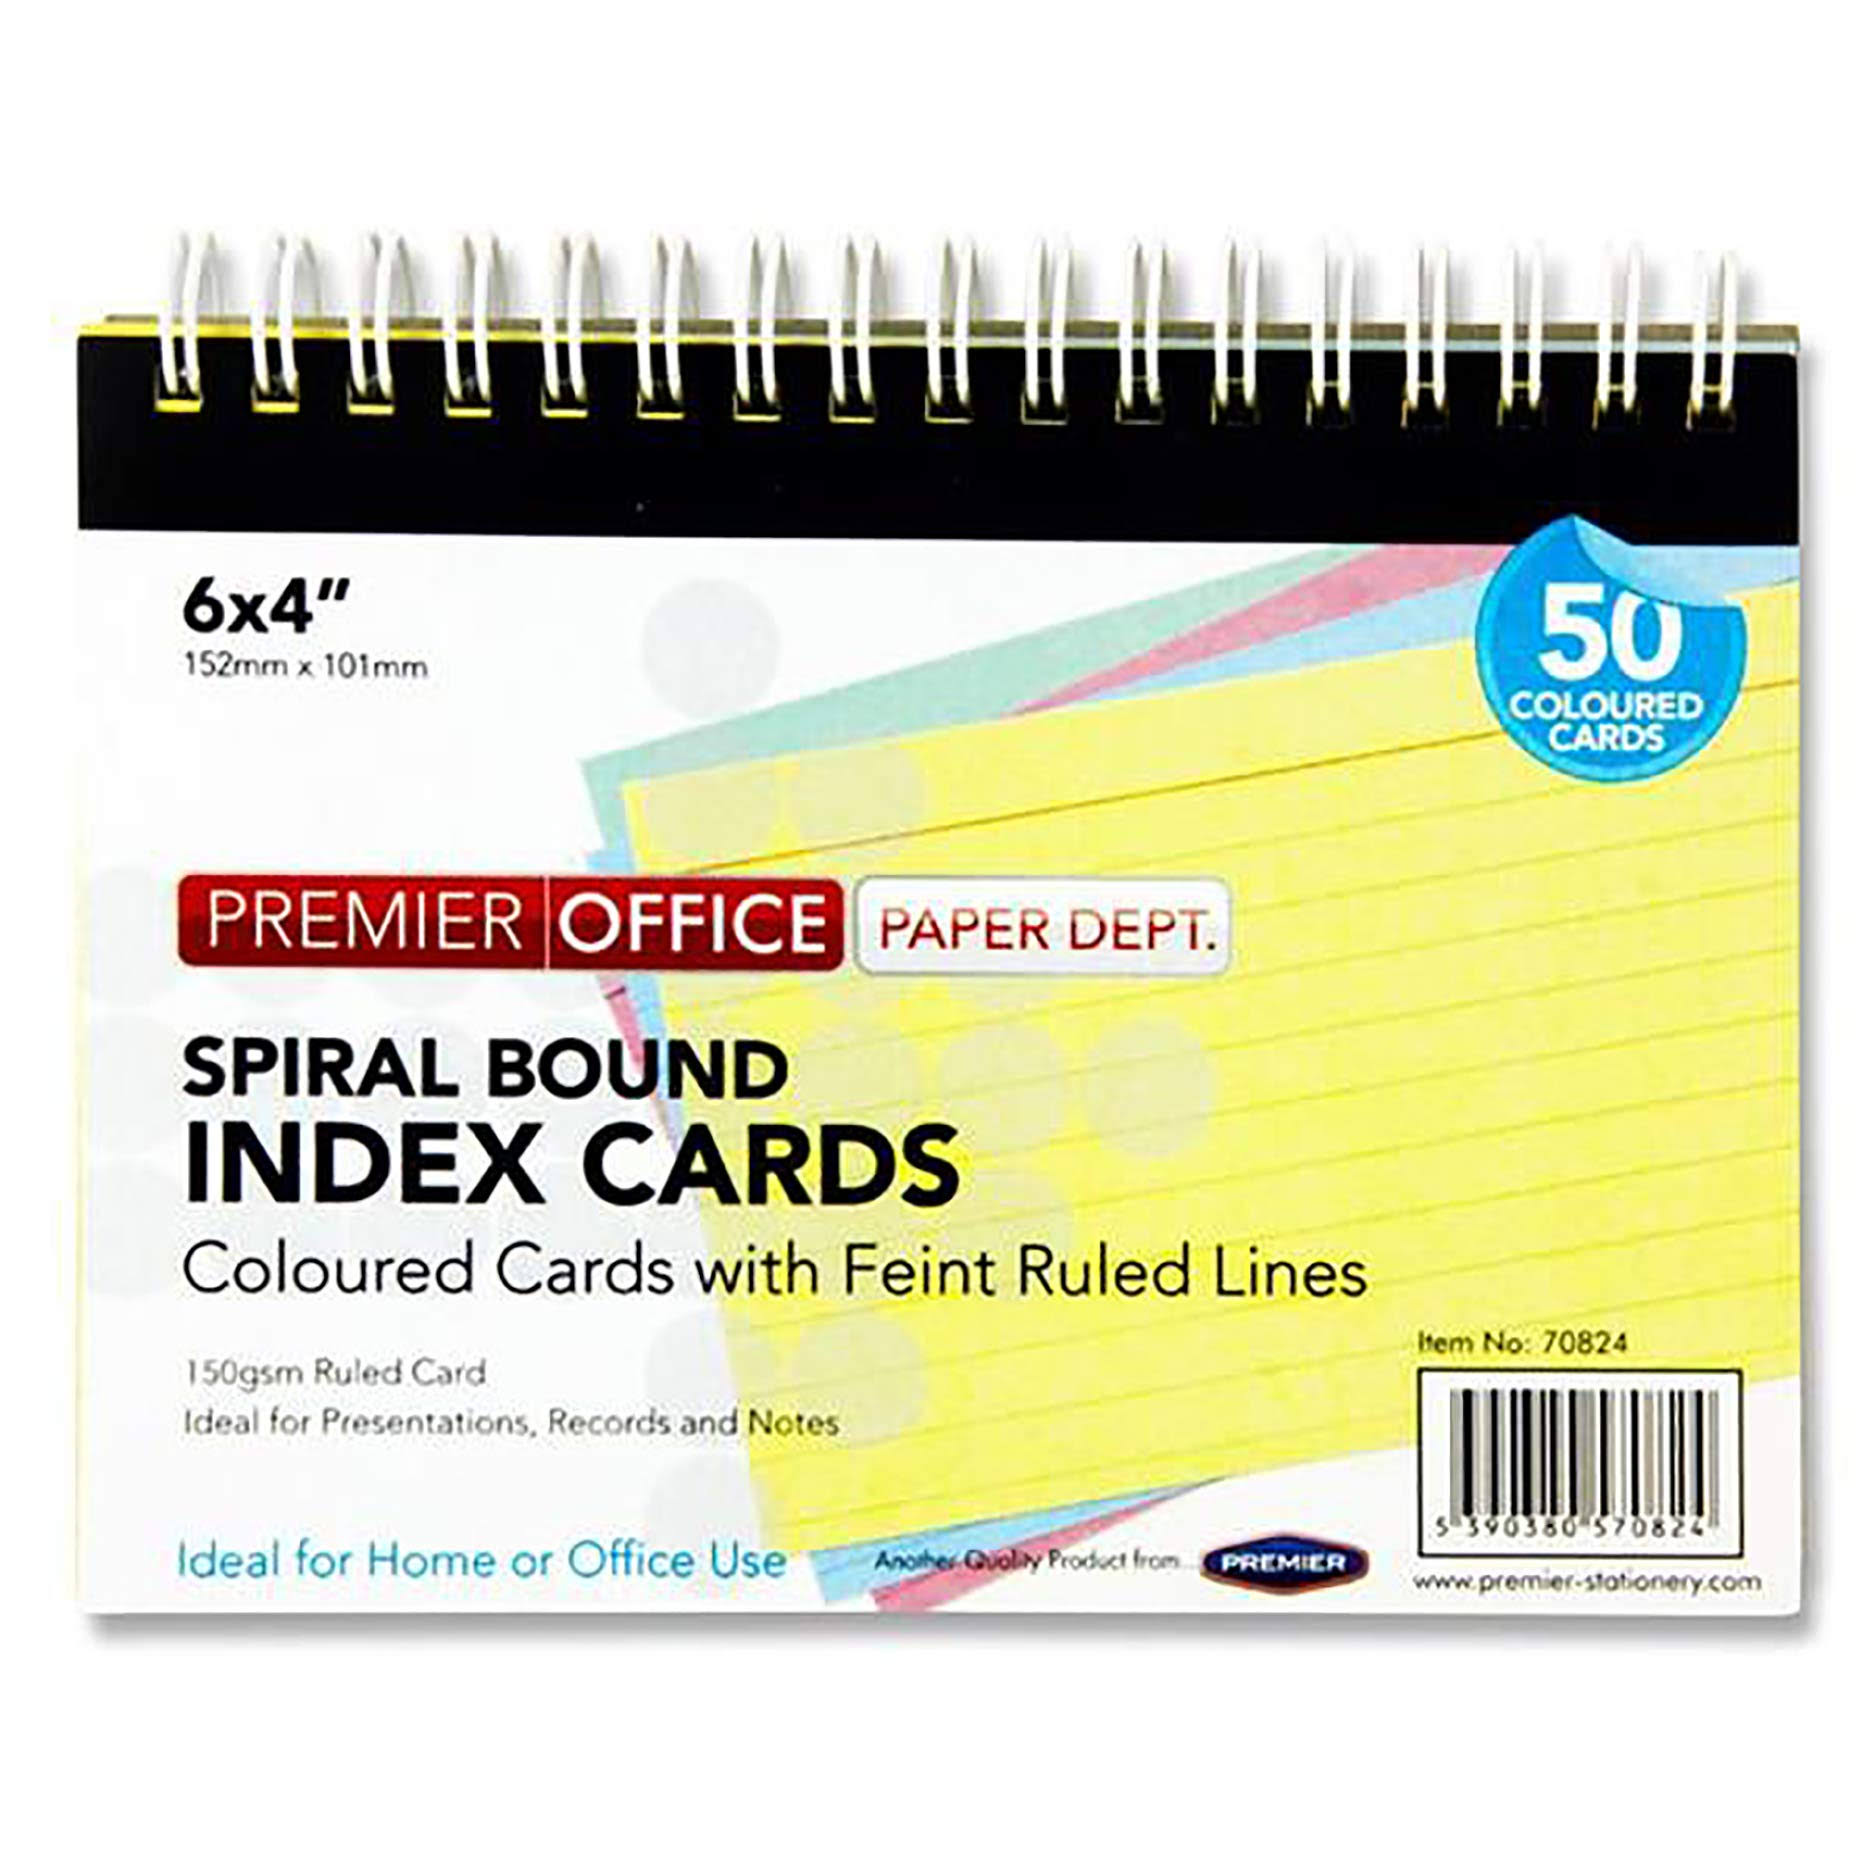 Premier Depot Spiral Bound Index Cards - 50 Cards